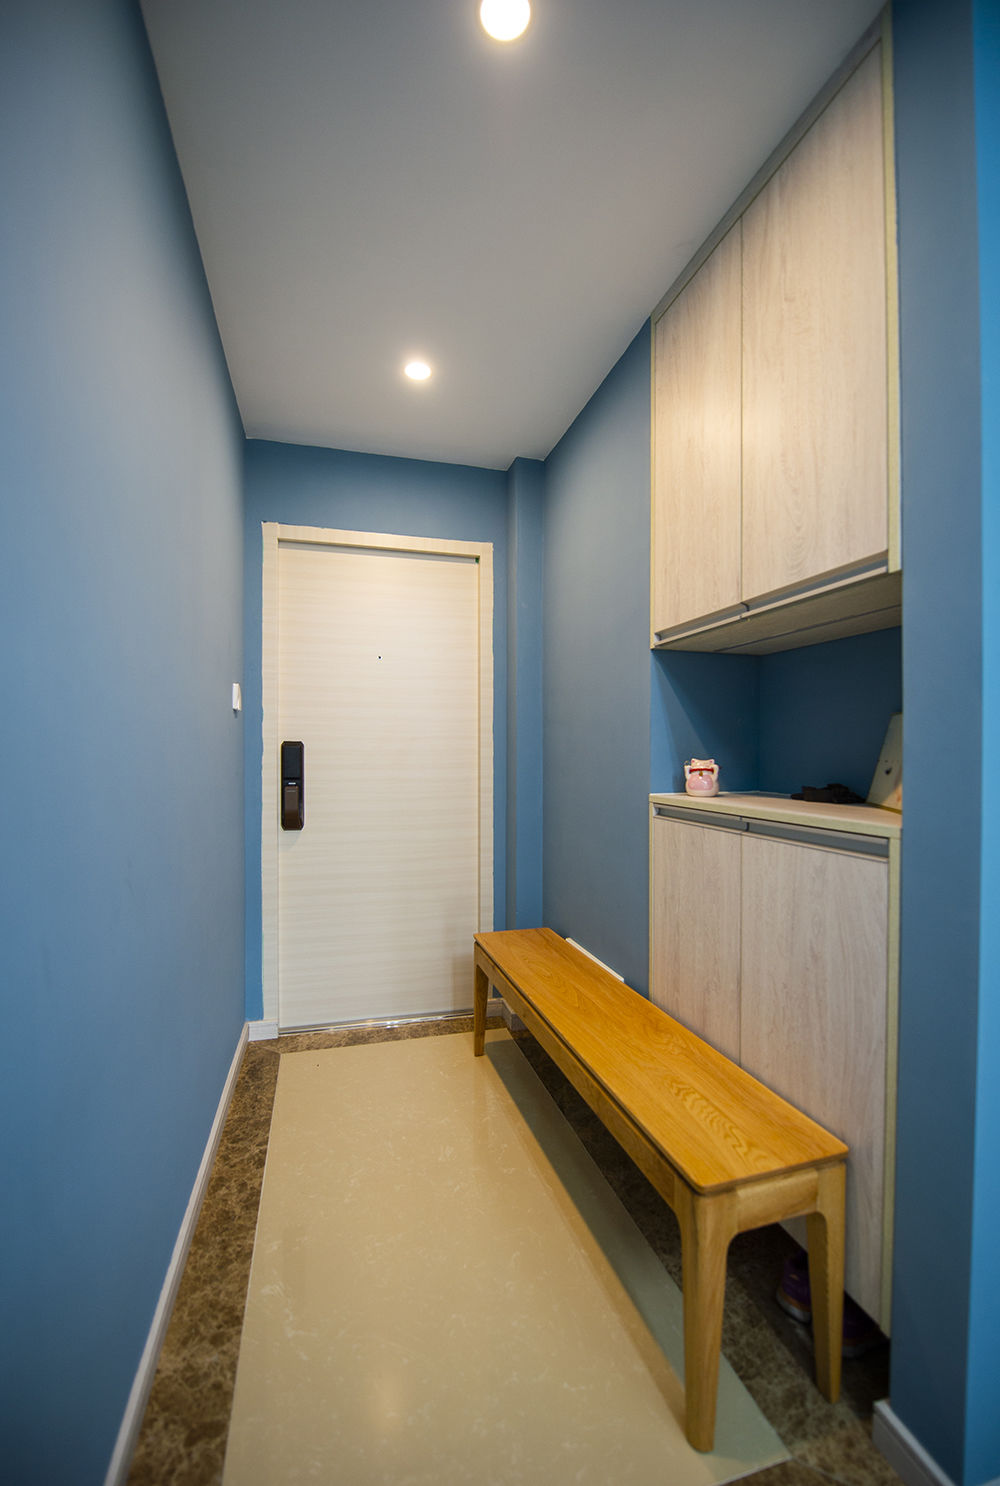 采用一抹蓝色注入家居空间，为家增添了优雅、沉稳又浪漫的气息，更显欧式风格的典雅气质。